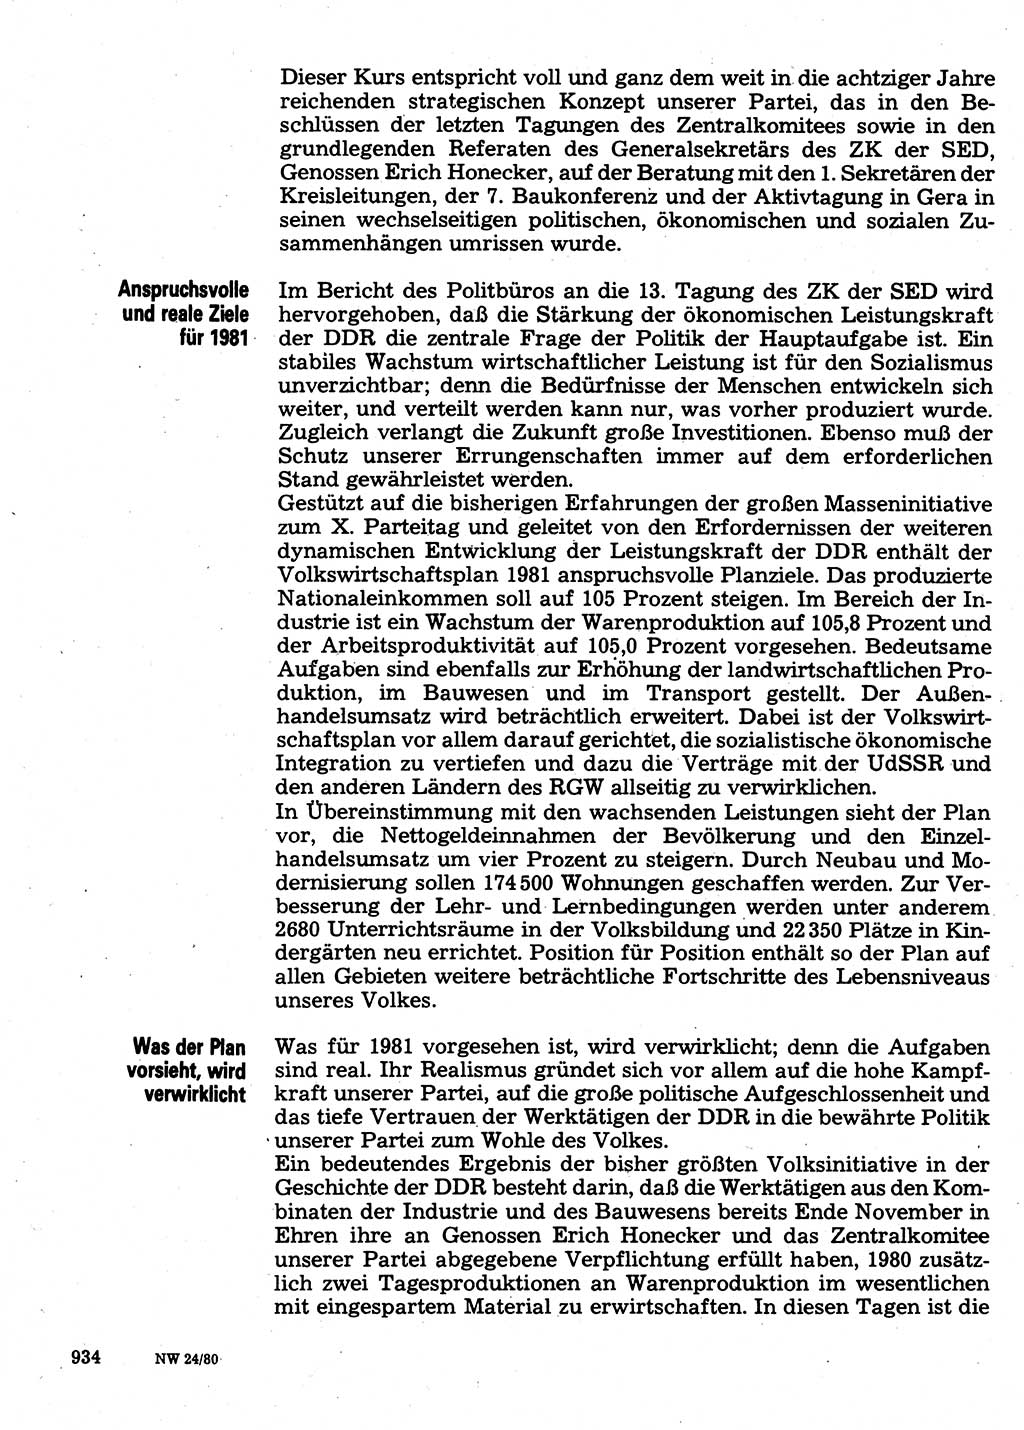 Neuer Weg (NW), Organ des Zentralkomitees (ZK) der SED (Sozialistische Einheitspartei Deutschlands) für Fragen des Parteilebens, 35. Jahrgang [Deutsche Demokratische Republik (DDR)] 1980, Seite 934 (NW ZK SED DDR 1980, S. 934)